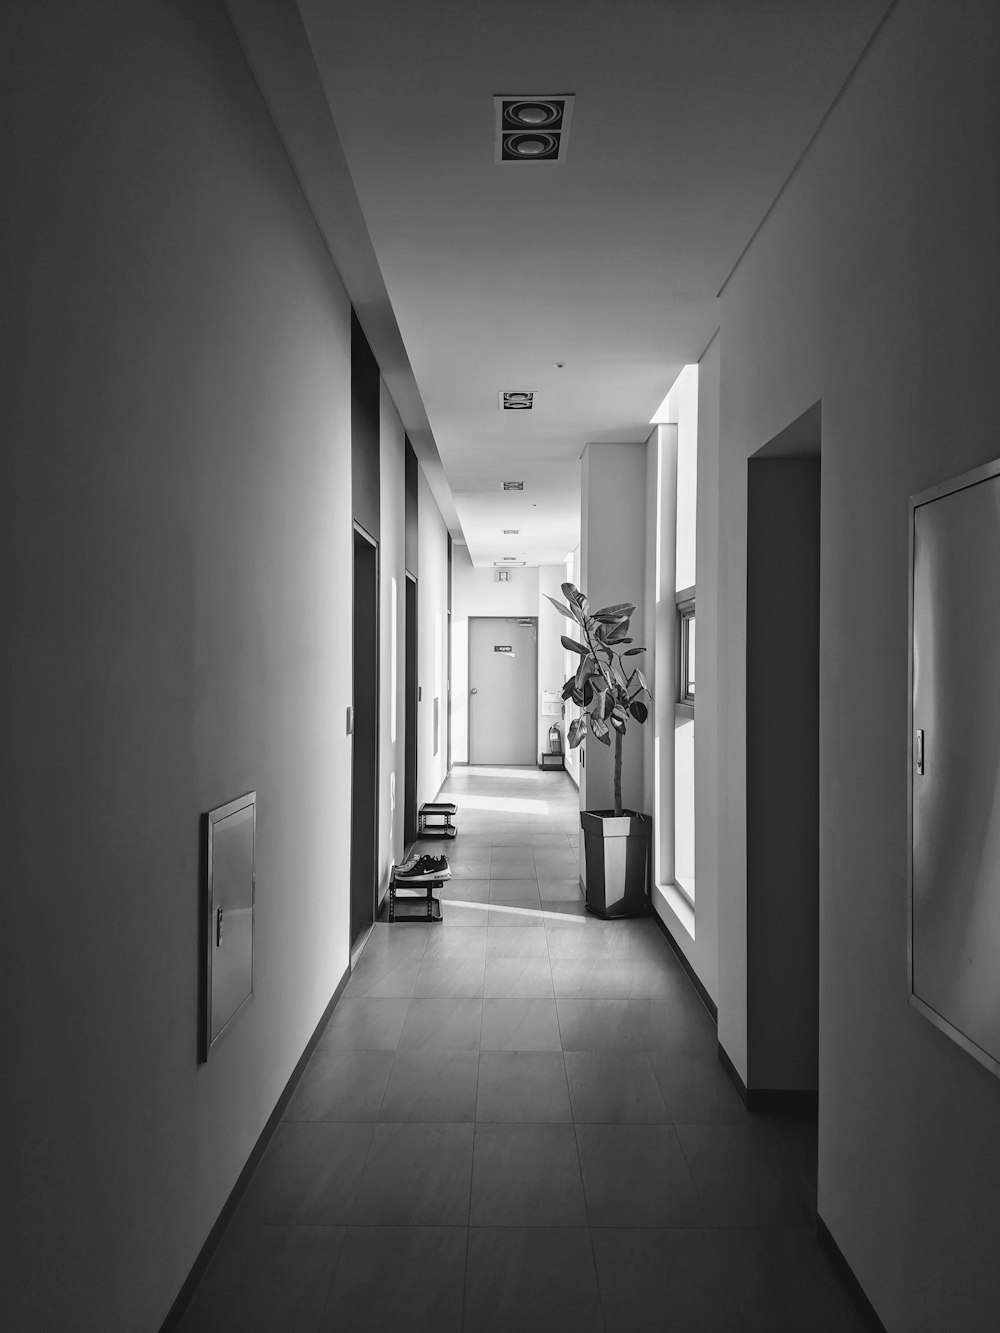 Photo en niveaux de gris d’un couloir aux murs blancs